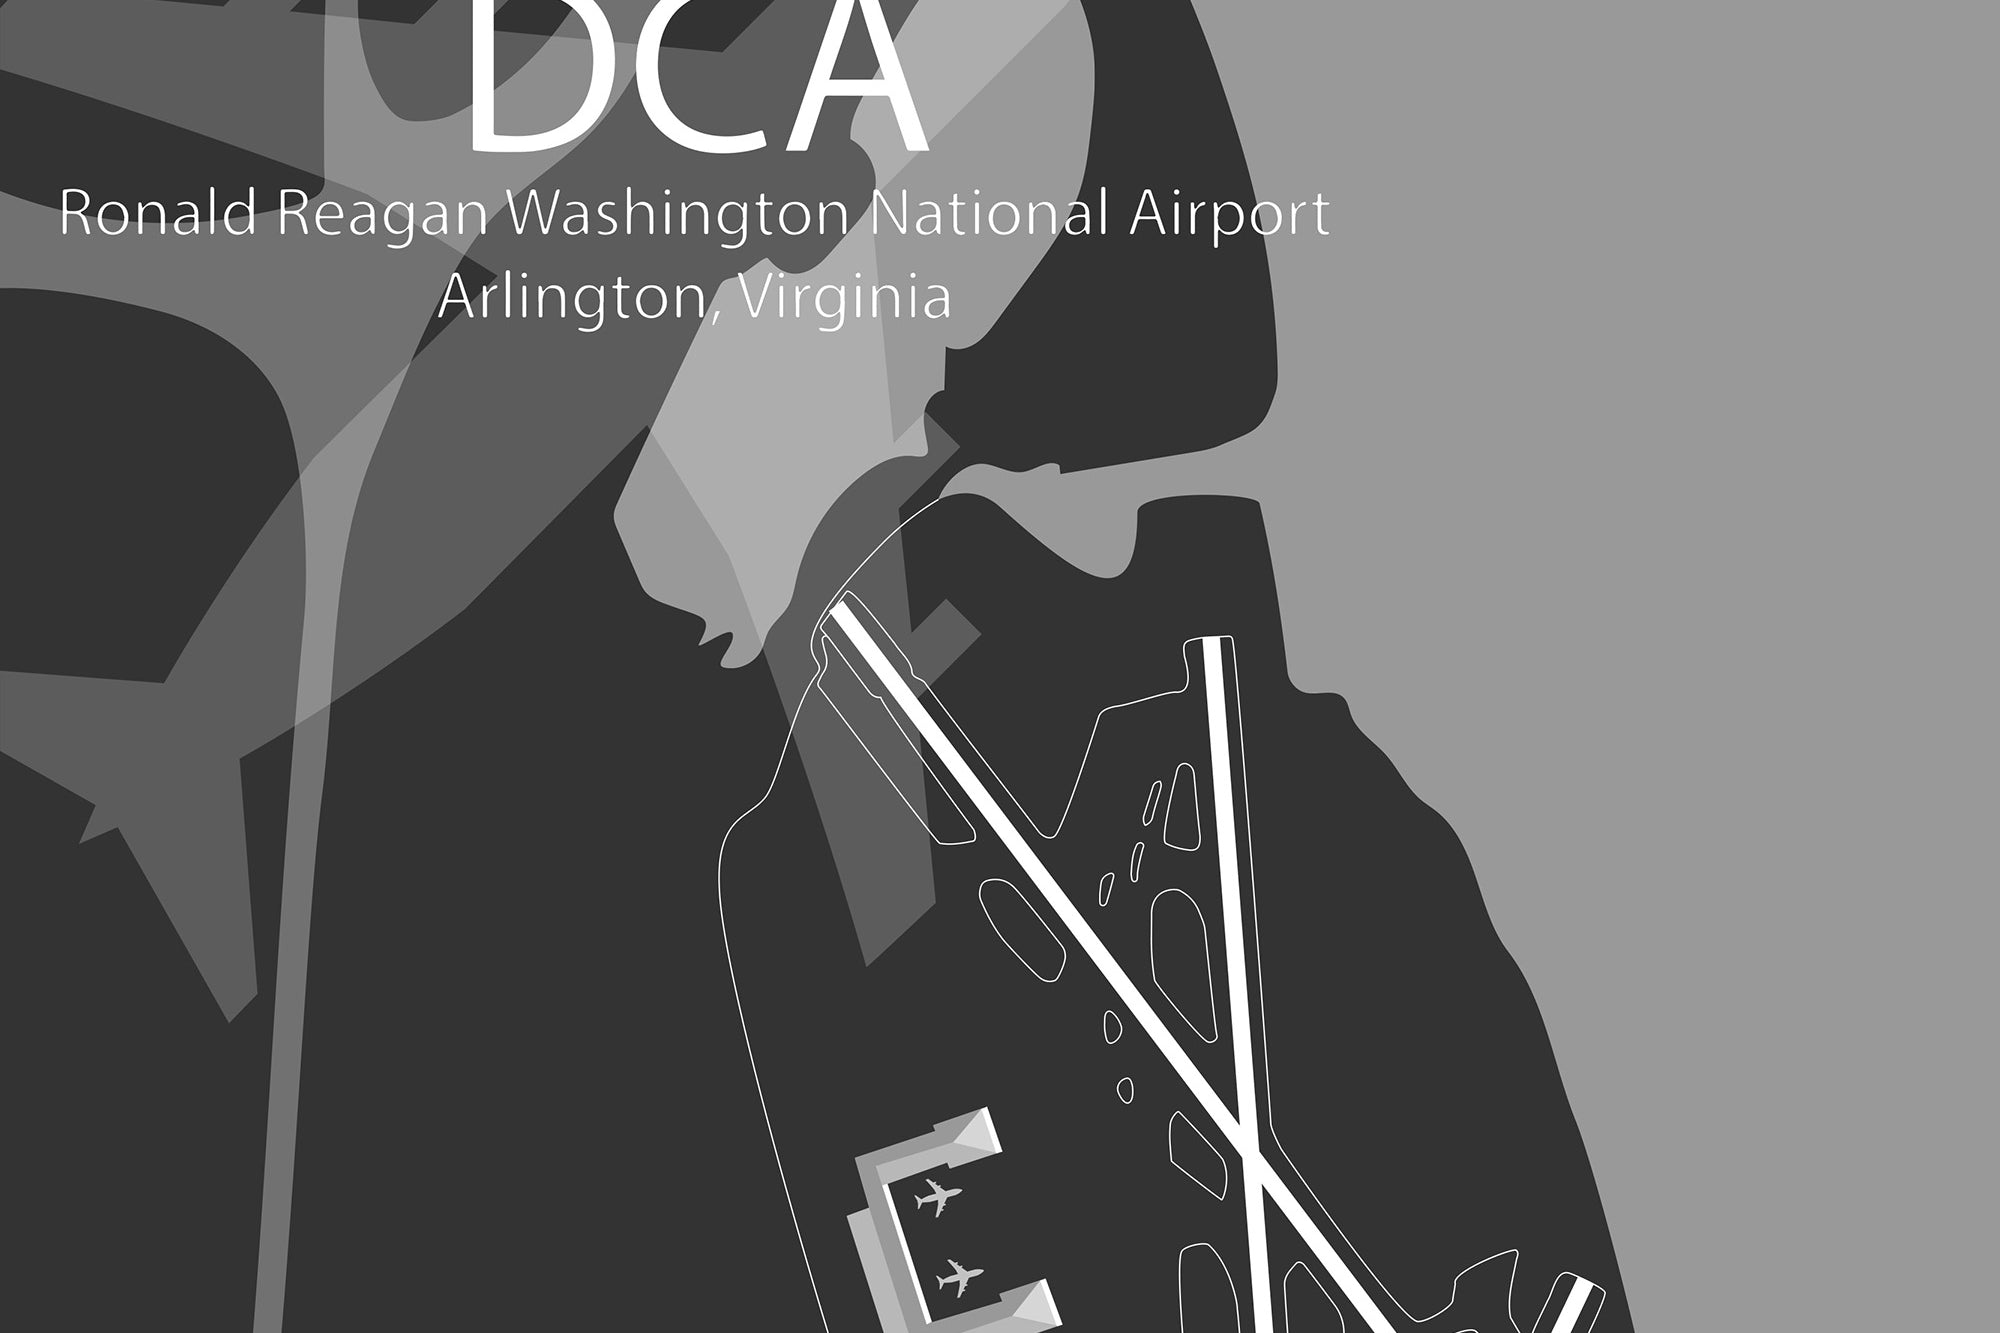 DCA Airport Runway Map